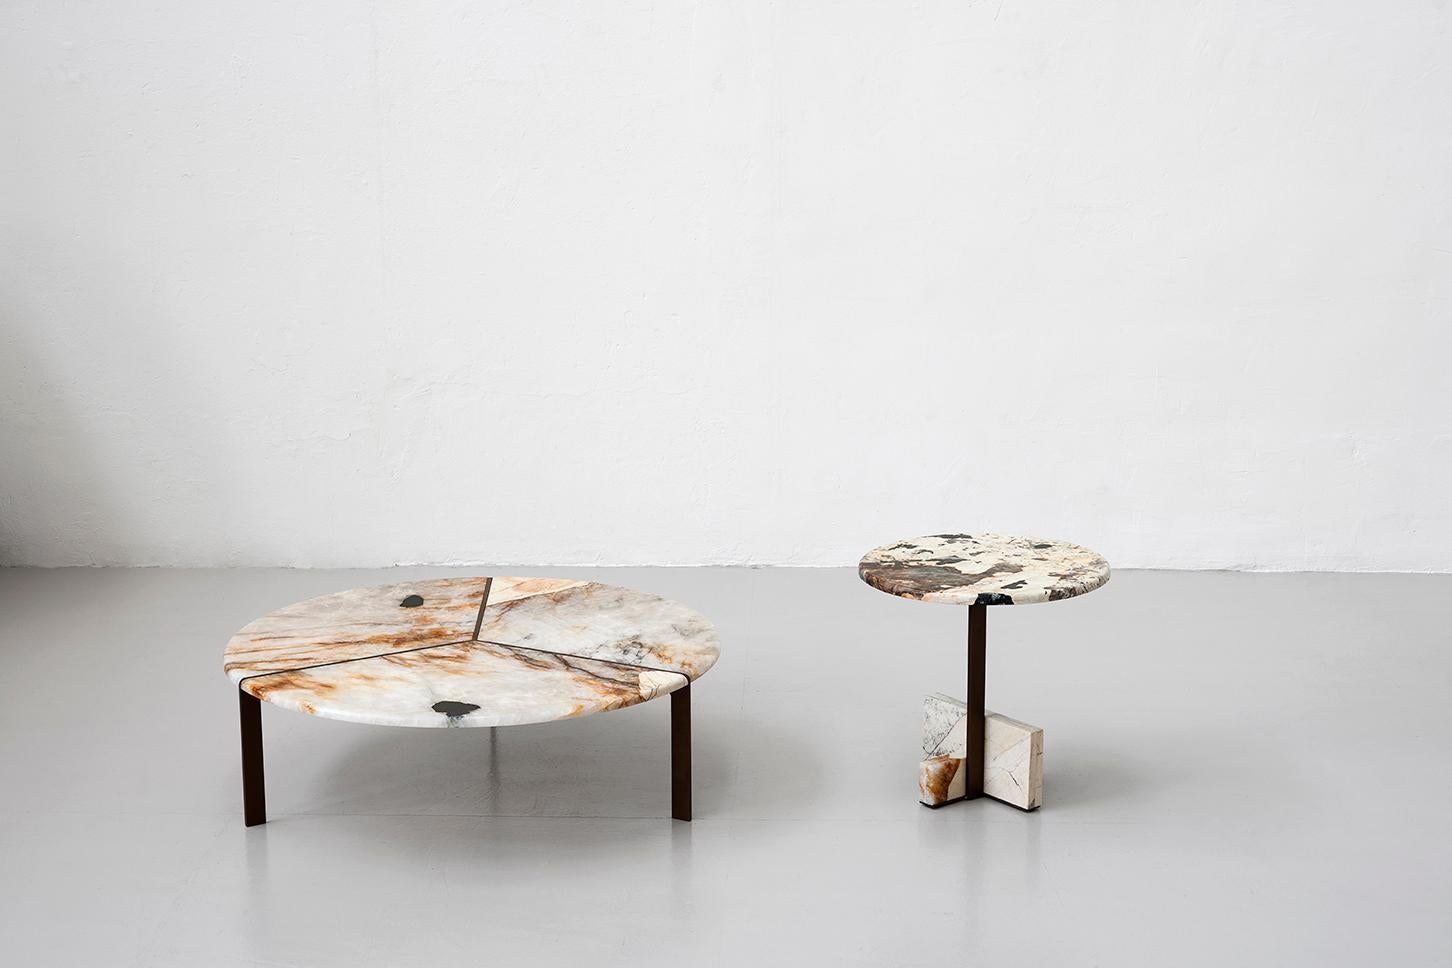 La douceur du design des meubles brésiliens entre les années 1940 et 1960 dans l'architecture moderniste de Niemeyer, Costa, Vilanova Artigas et Bo Bardi est l'inspiration de la nouvelle collection de tables Joaquim de Bonaguro pour Tacchini. Sur le